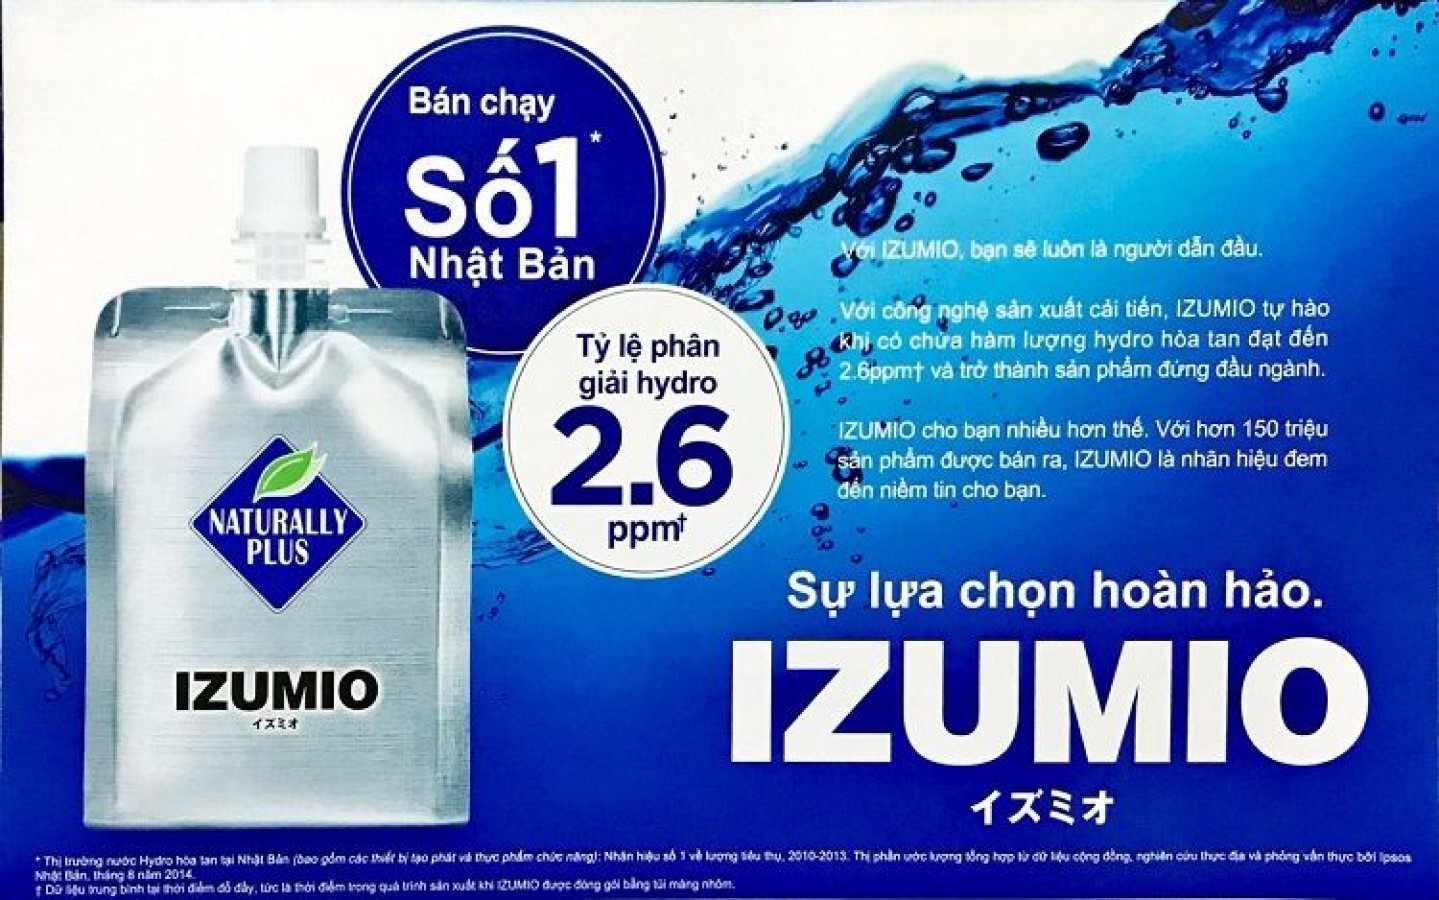 Nước Uống Izumio Giàu Hydro